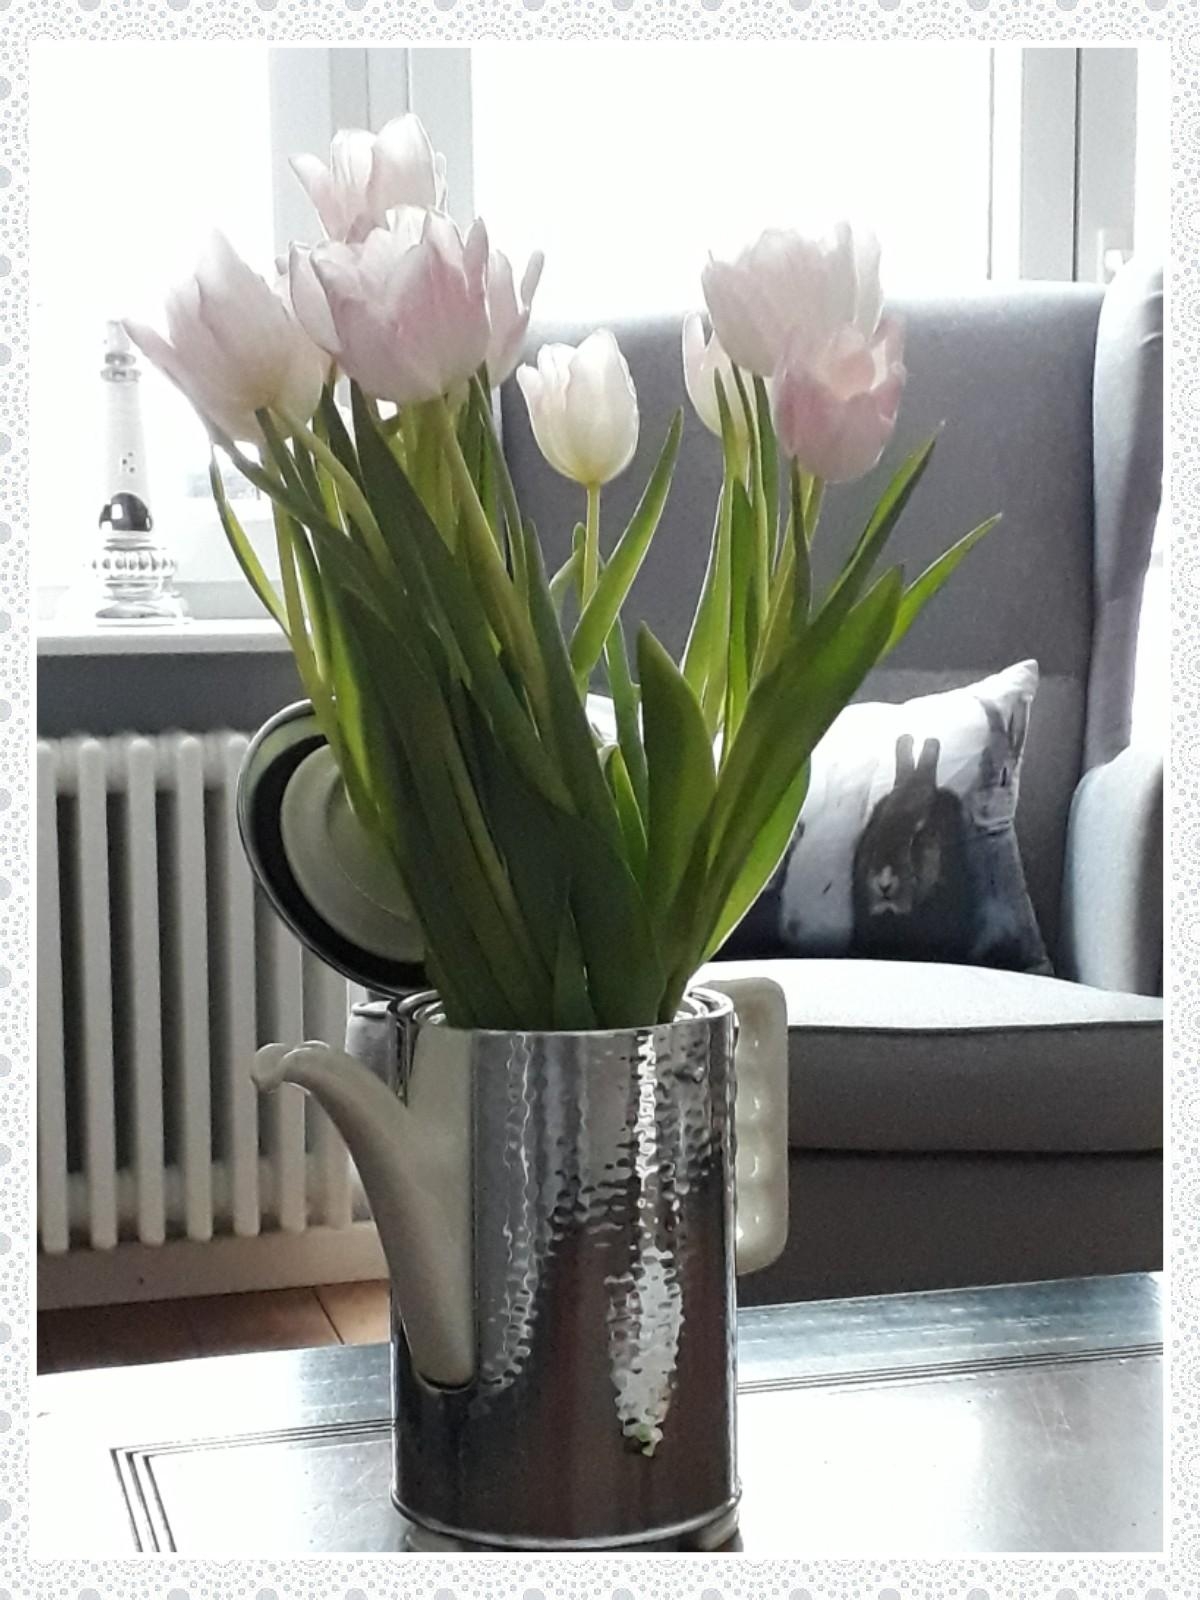 Tulpen, in einer alten Kaffeekanne arrangiert, lassen uns vom bevorstehenden Frühling träumen!